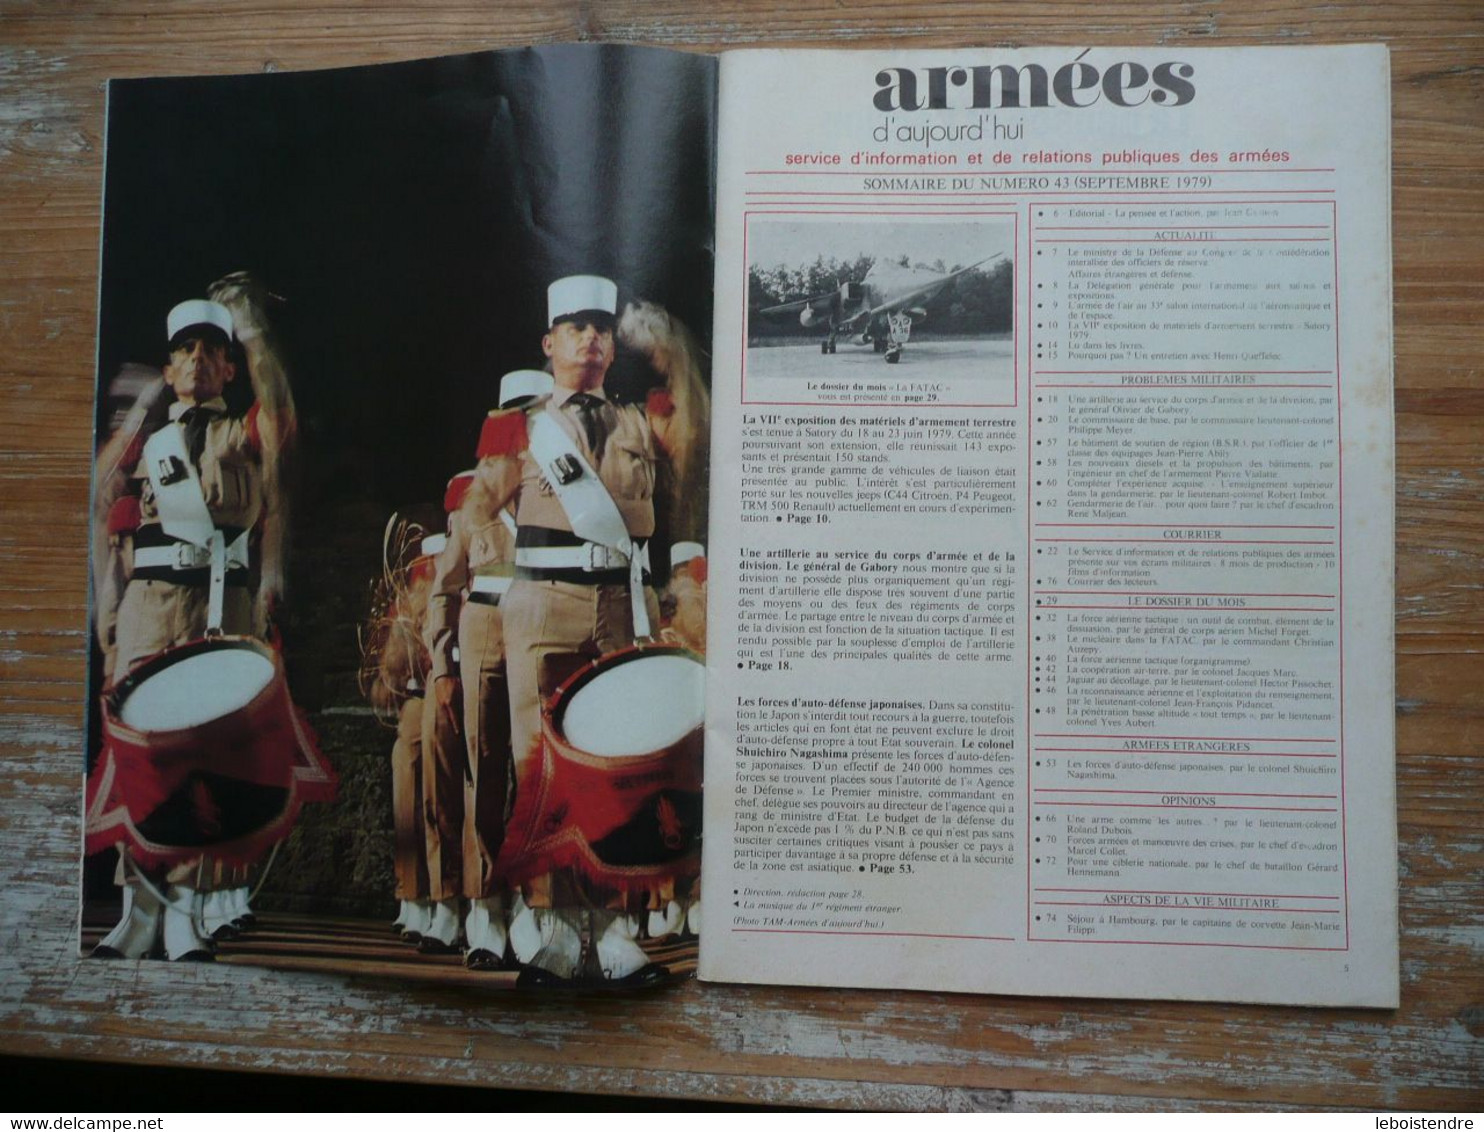 ARMEES D AUJOURD'HUI N° 43 SEPTEMBRE 1979 MENSUEL SATORY 1979 FORCES D AUTO-DEFENSE JAPONAISES FORCE AERIENNE TACTIQUE - Francés